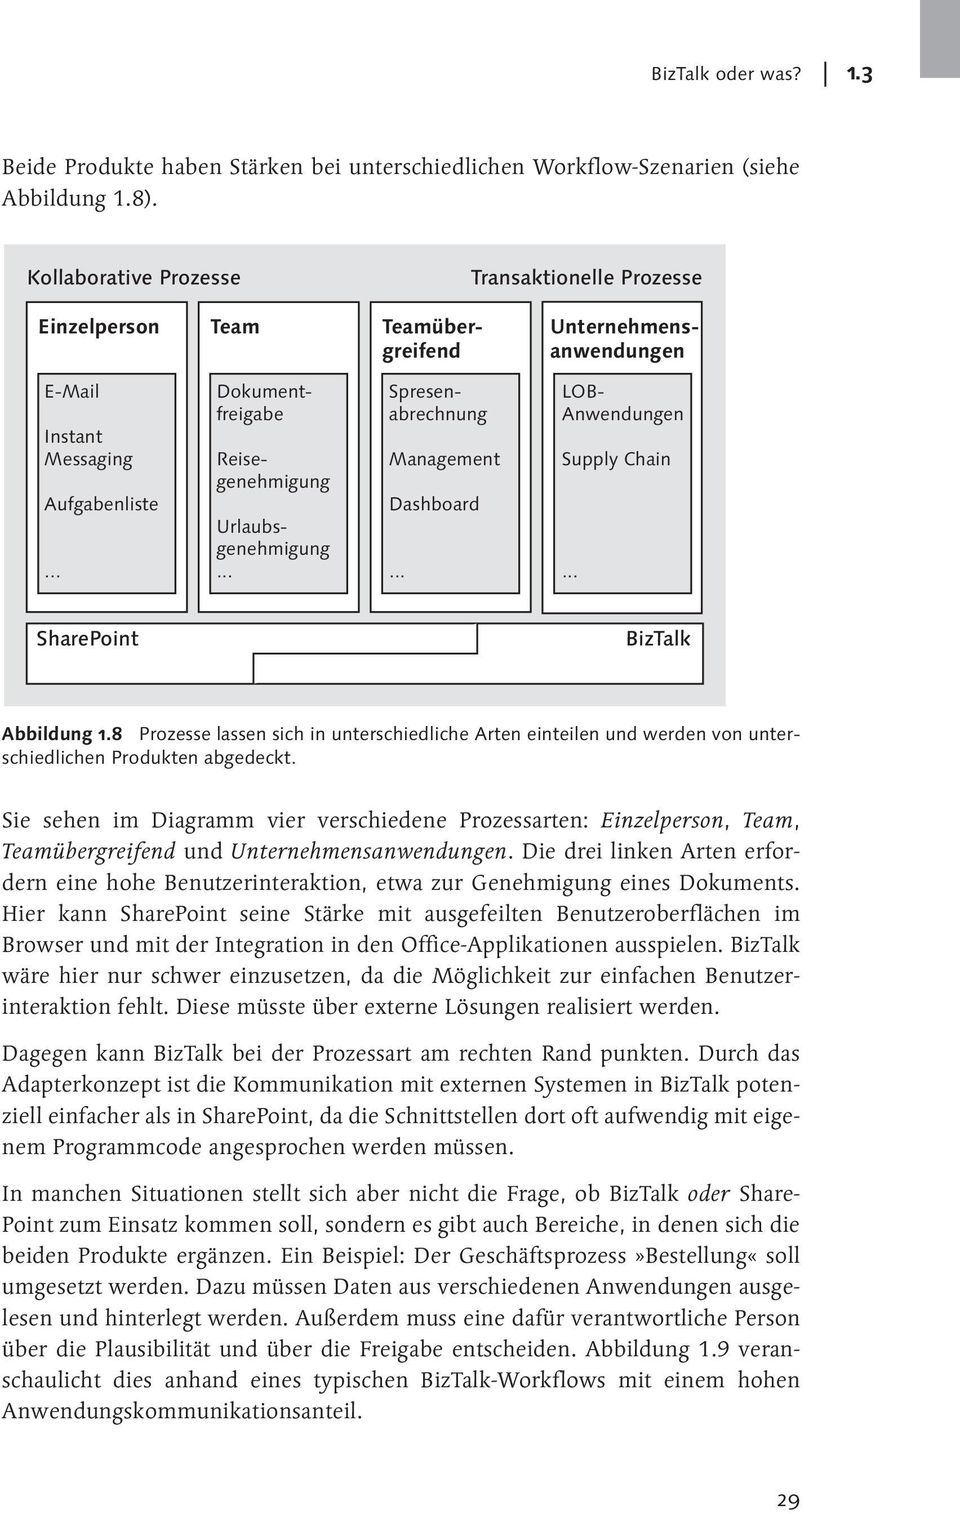 .. Management Dashboard... Spresenabrechnung LOB- Anwendungen Supply Chain... SharePoint BizTalk Abbildung 1.